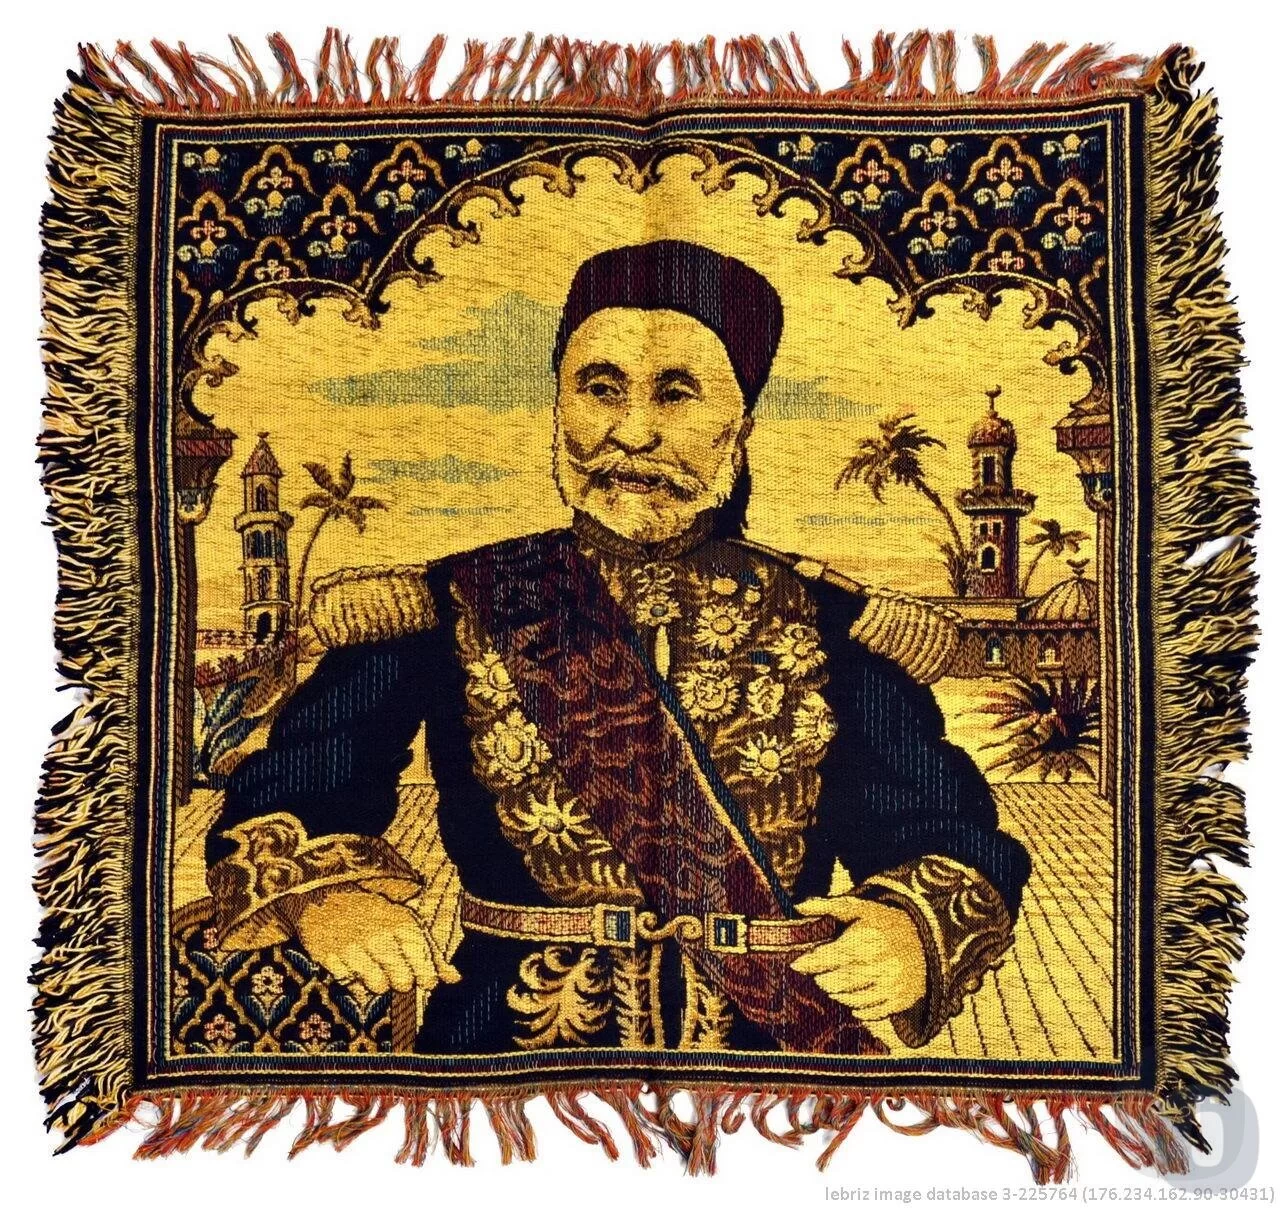 Osmanlı Paşası tasvirli dokuma pano